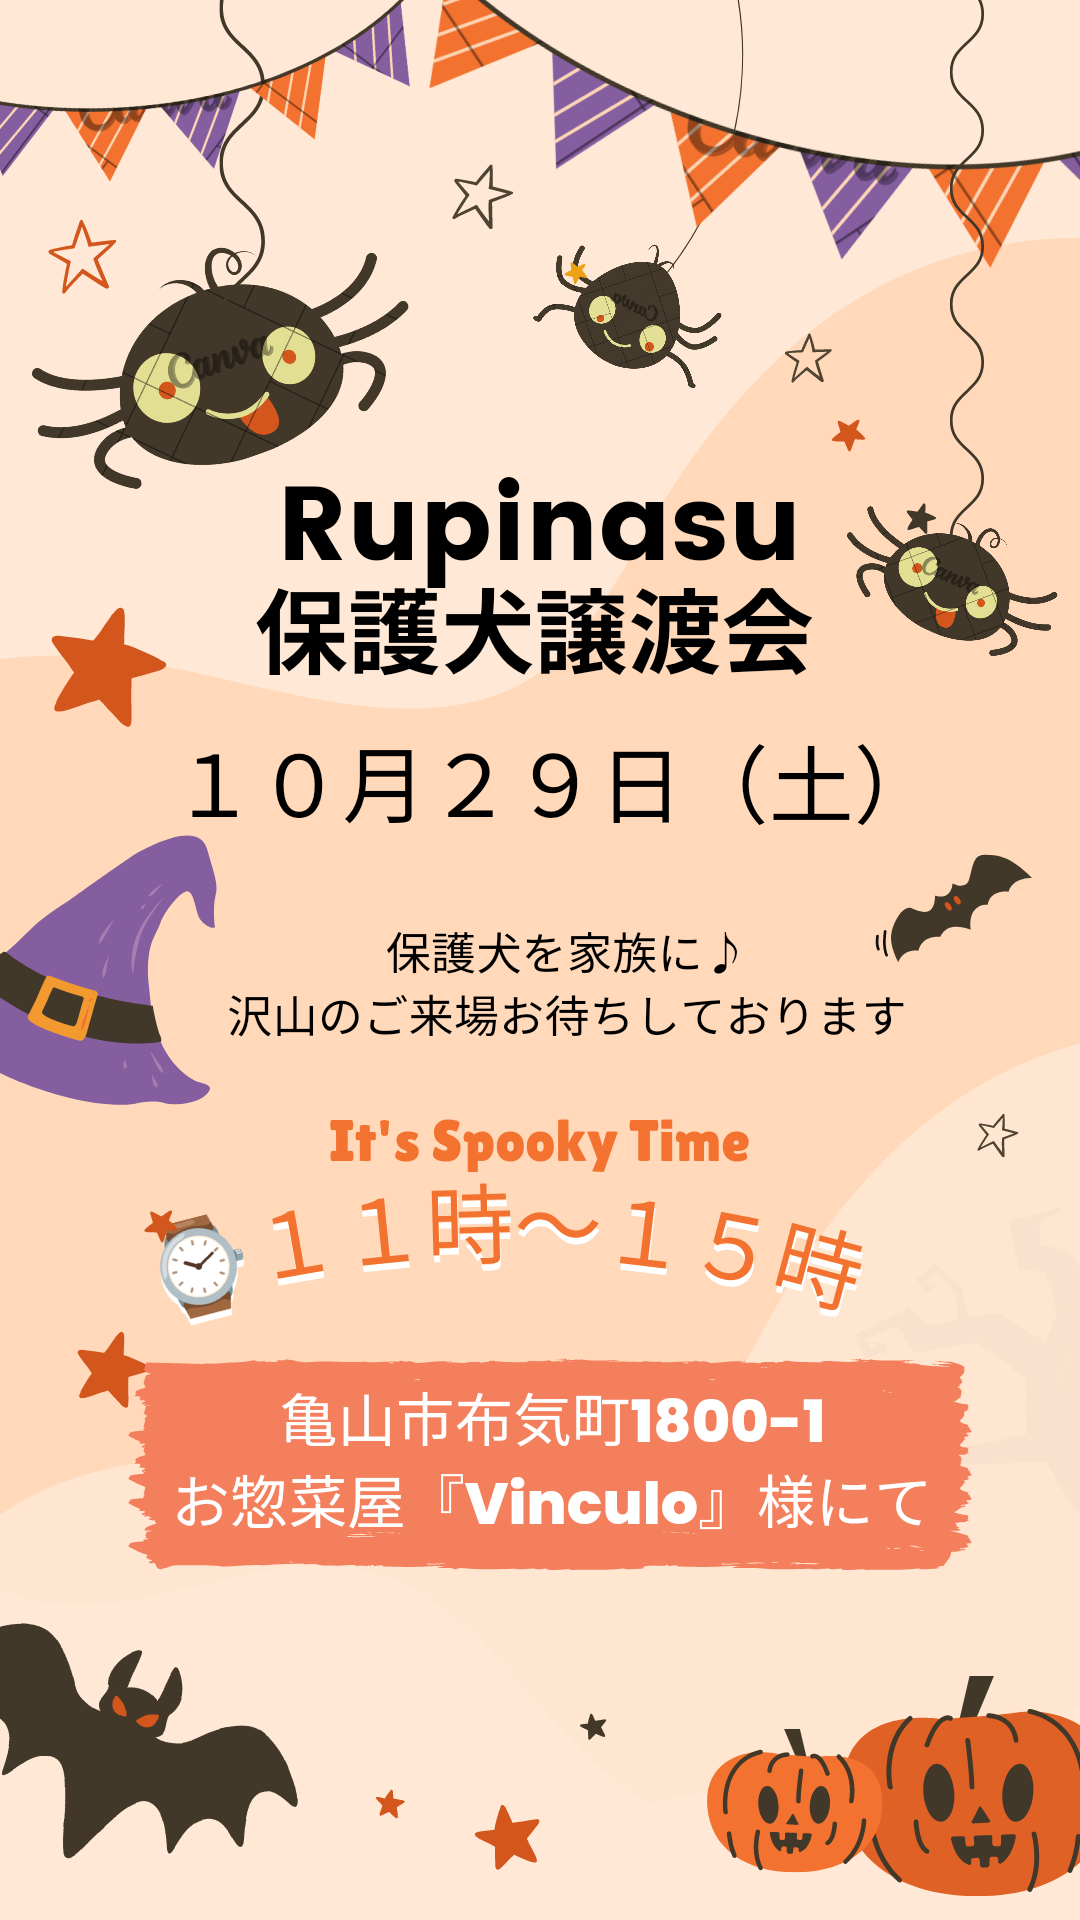 Rupinasu保護犬譲渡会 with どれみふぁまるしぇ